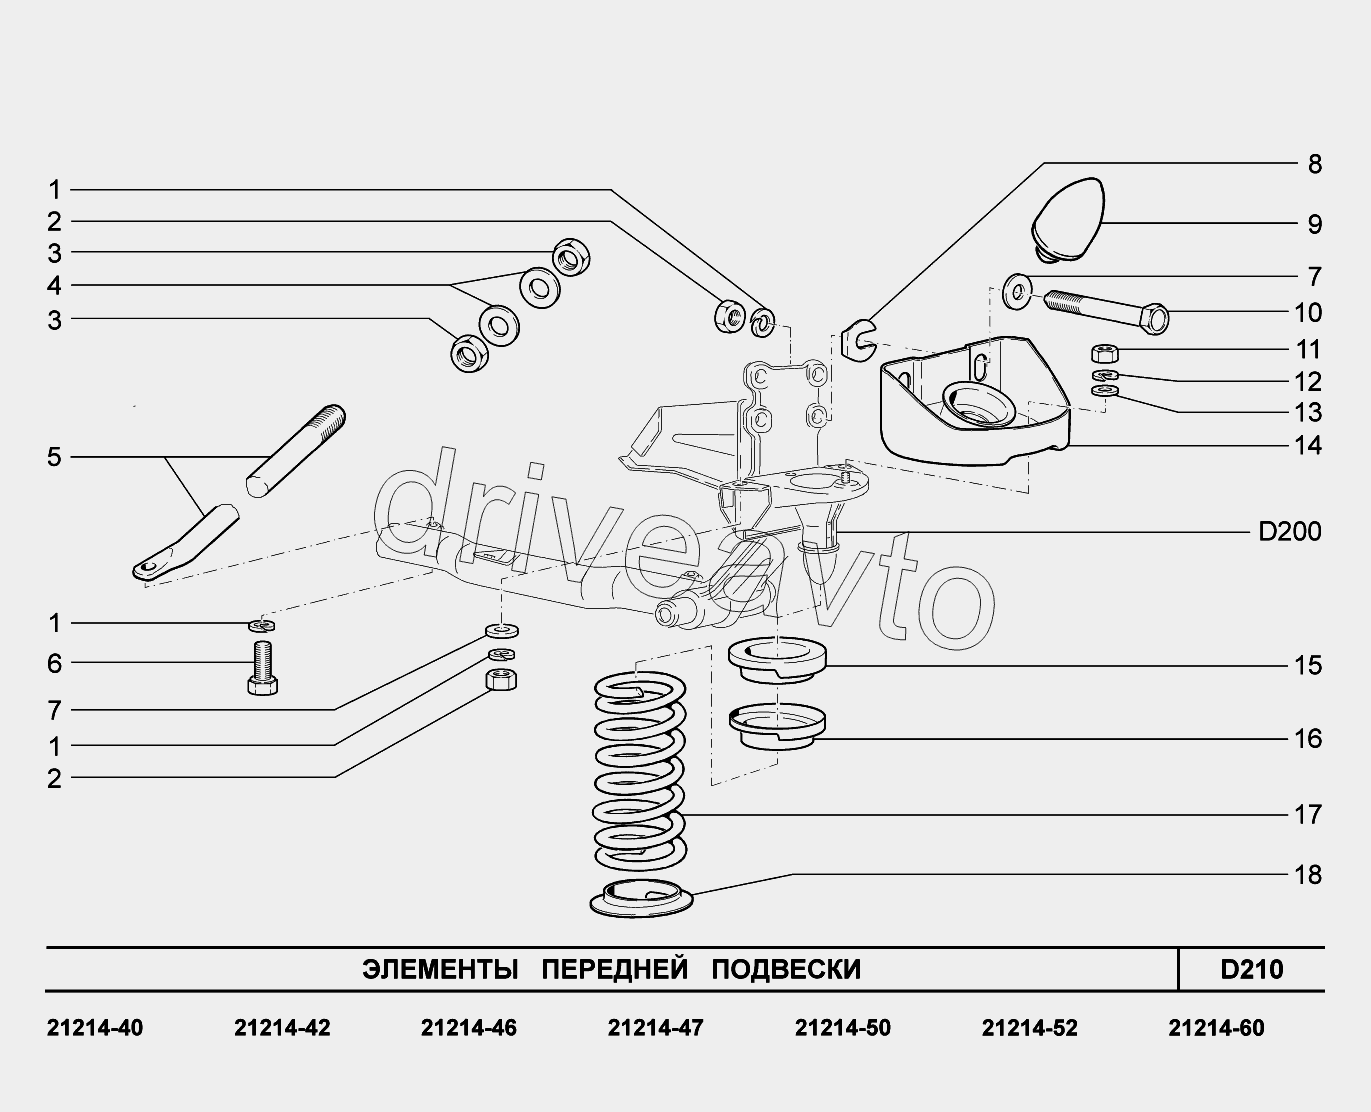 D210. Элементы передней подвески